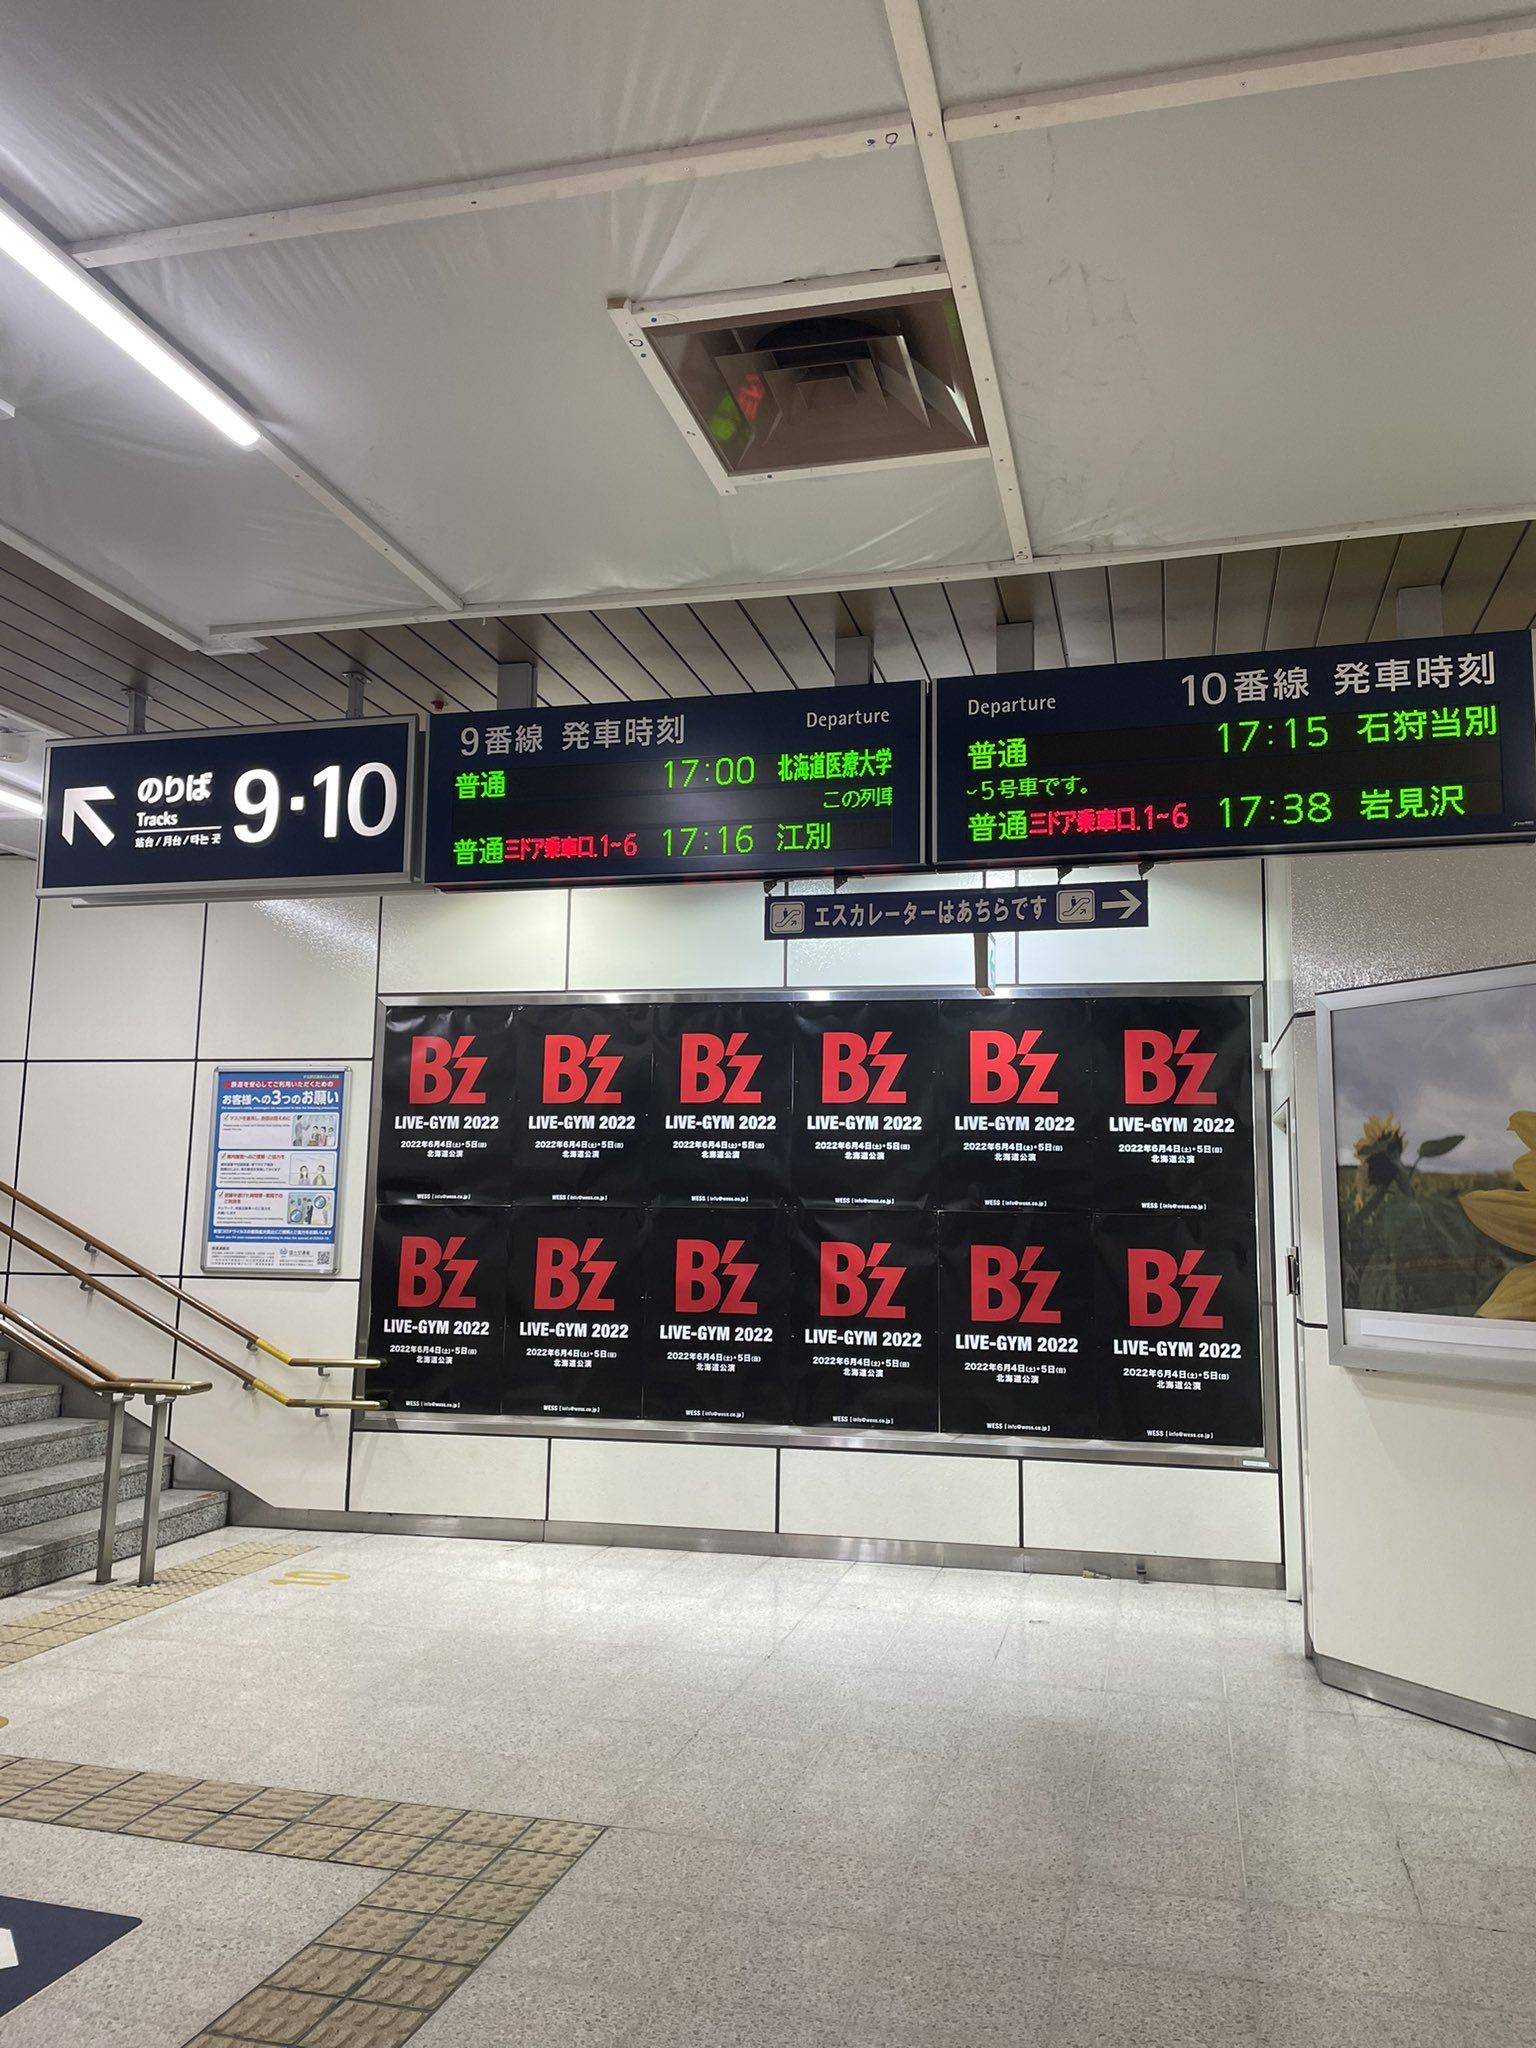 JR札幌駅に掲出された「B'z LIVE-GYM 2022」北海道公演の告知ポスターの写真